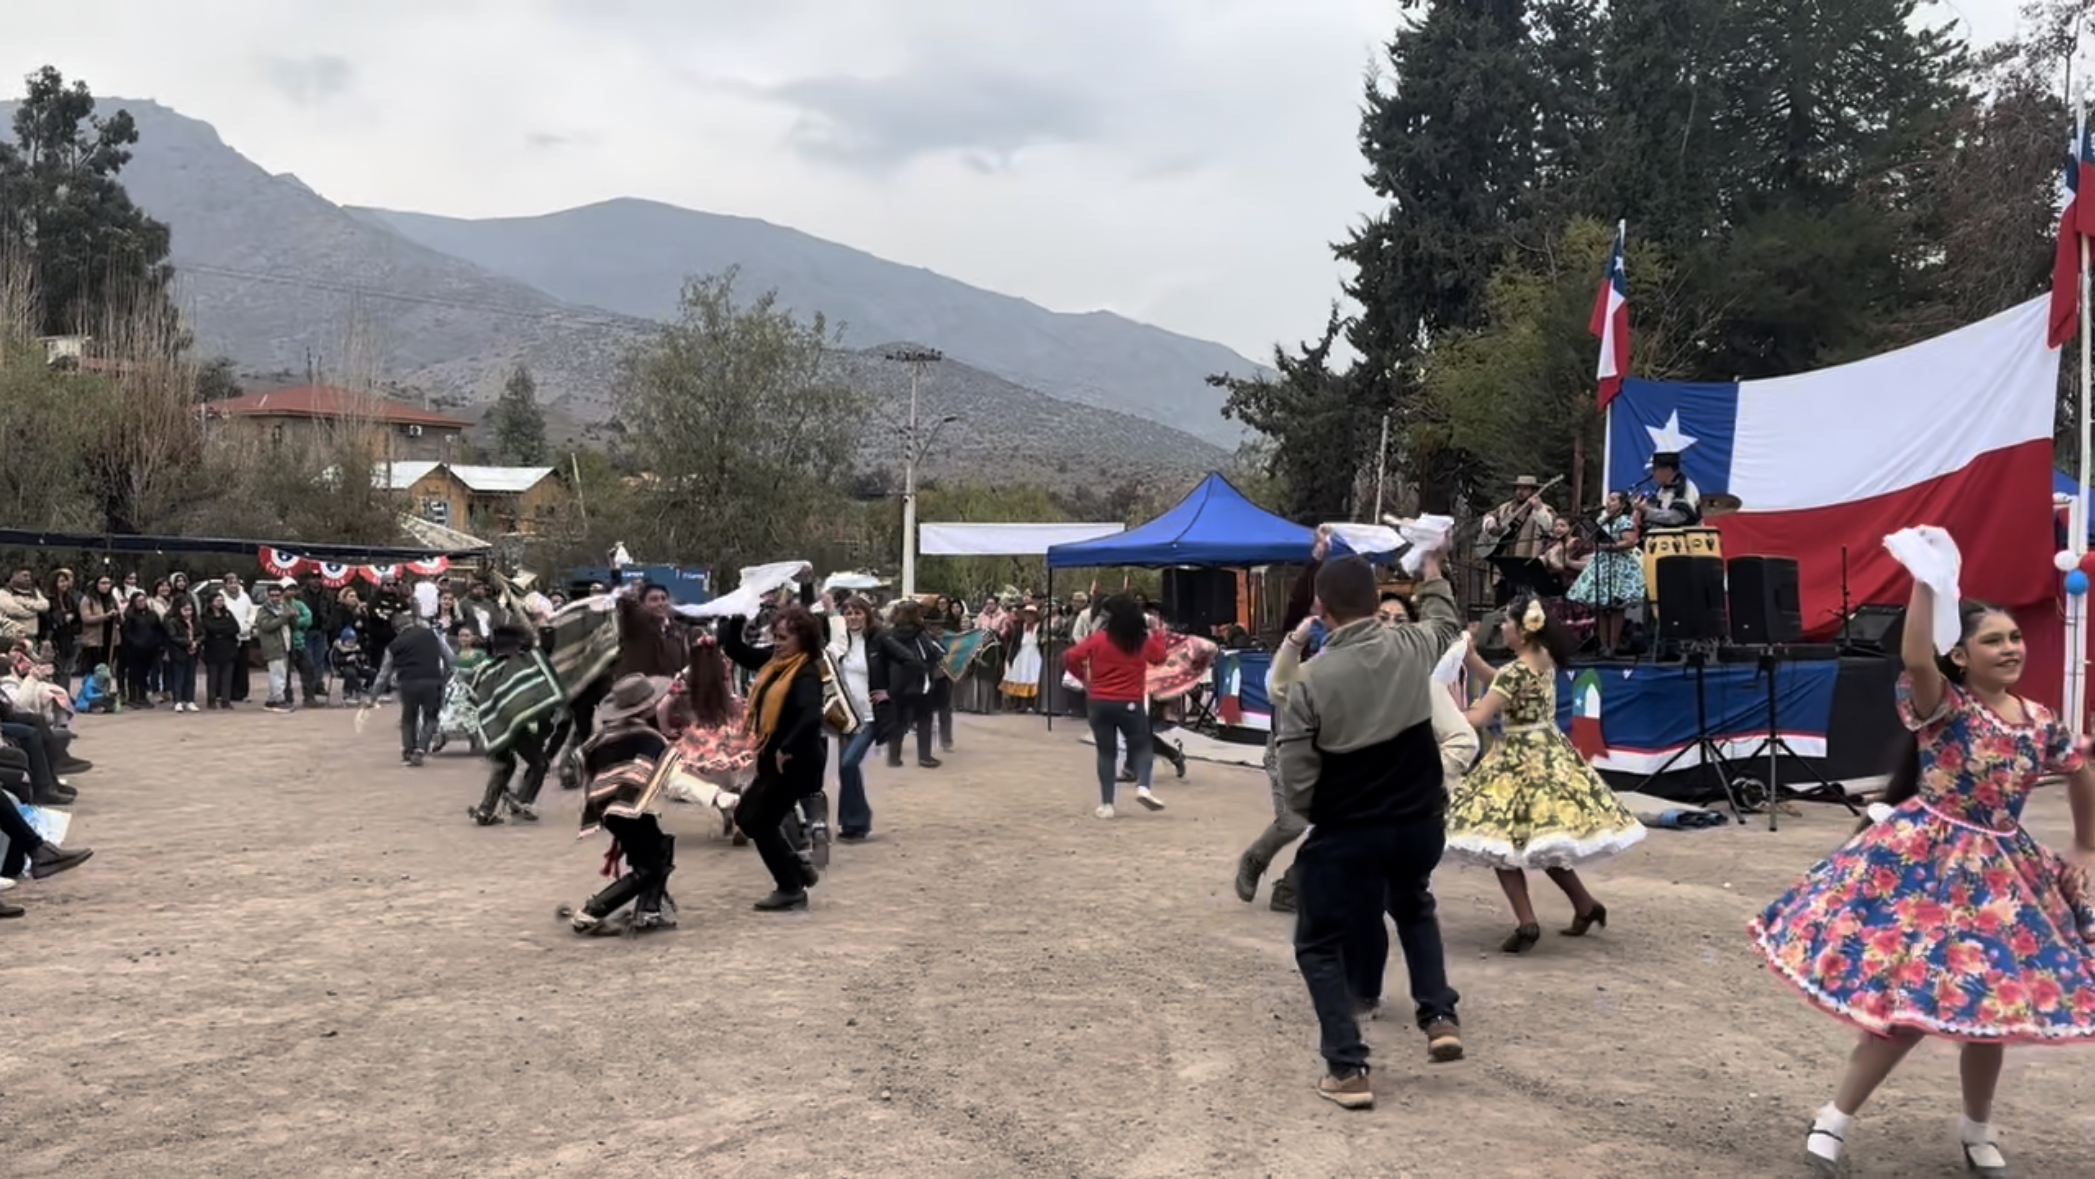 SAN ESTEBAN: Con gran éxito, San Esteban celebró el inicio del mes de la patria con la Fiesta Costumbrista de Campos de Ahumada